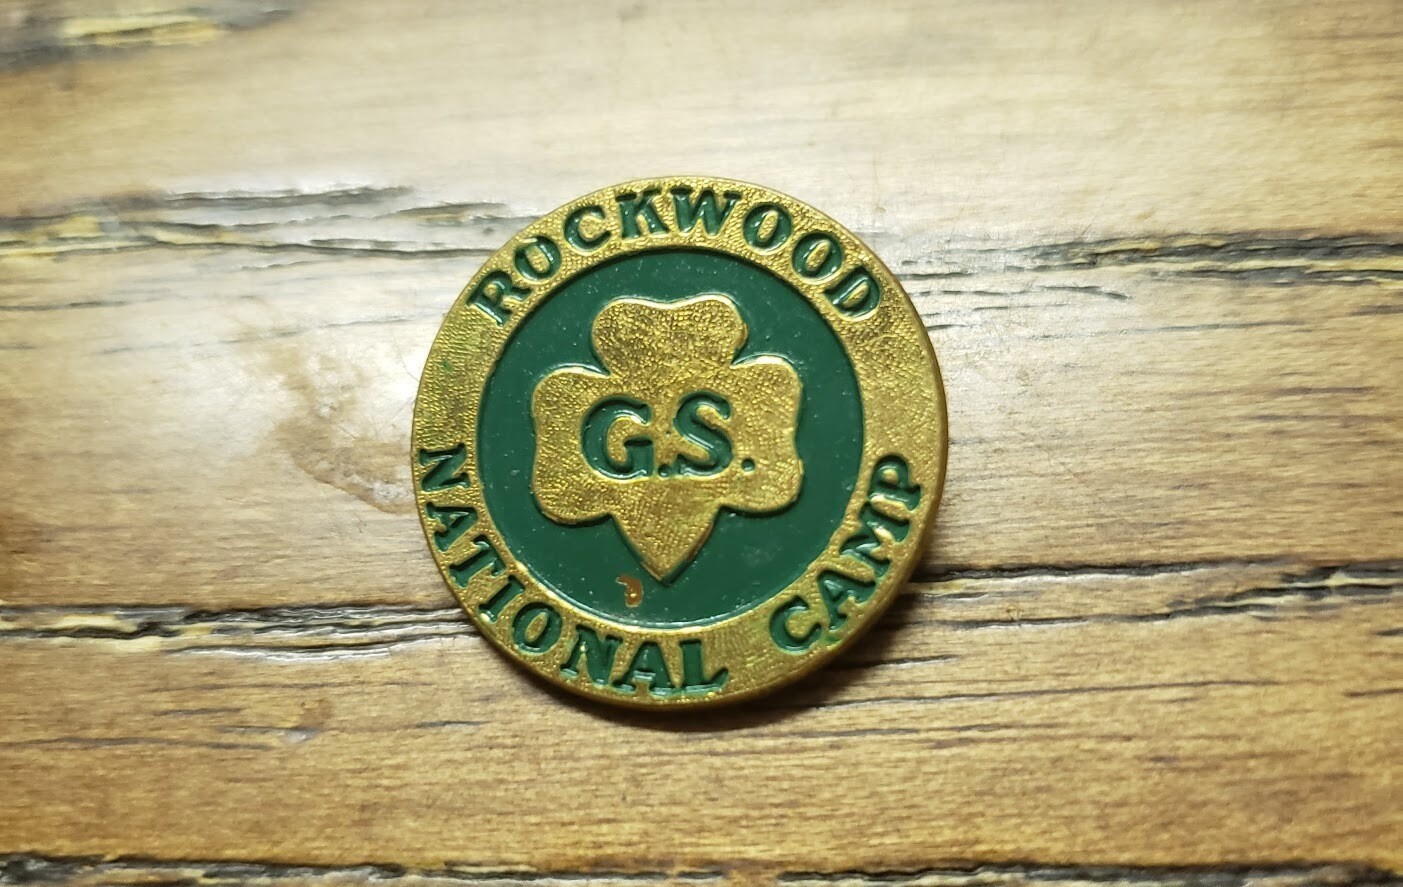 Rockwood National Camp Pin (large--1 in diameter)